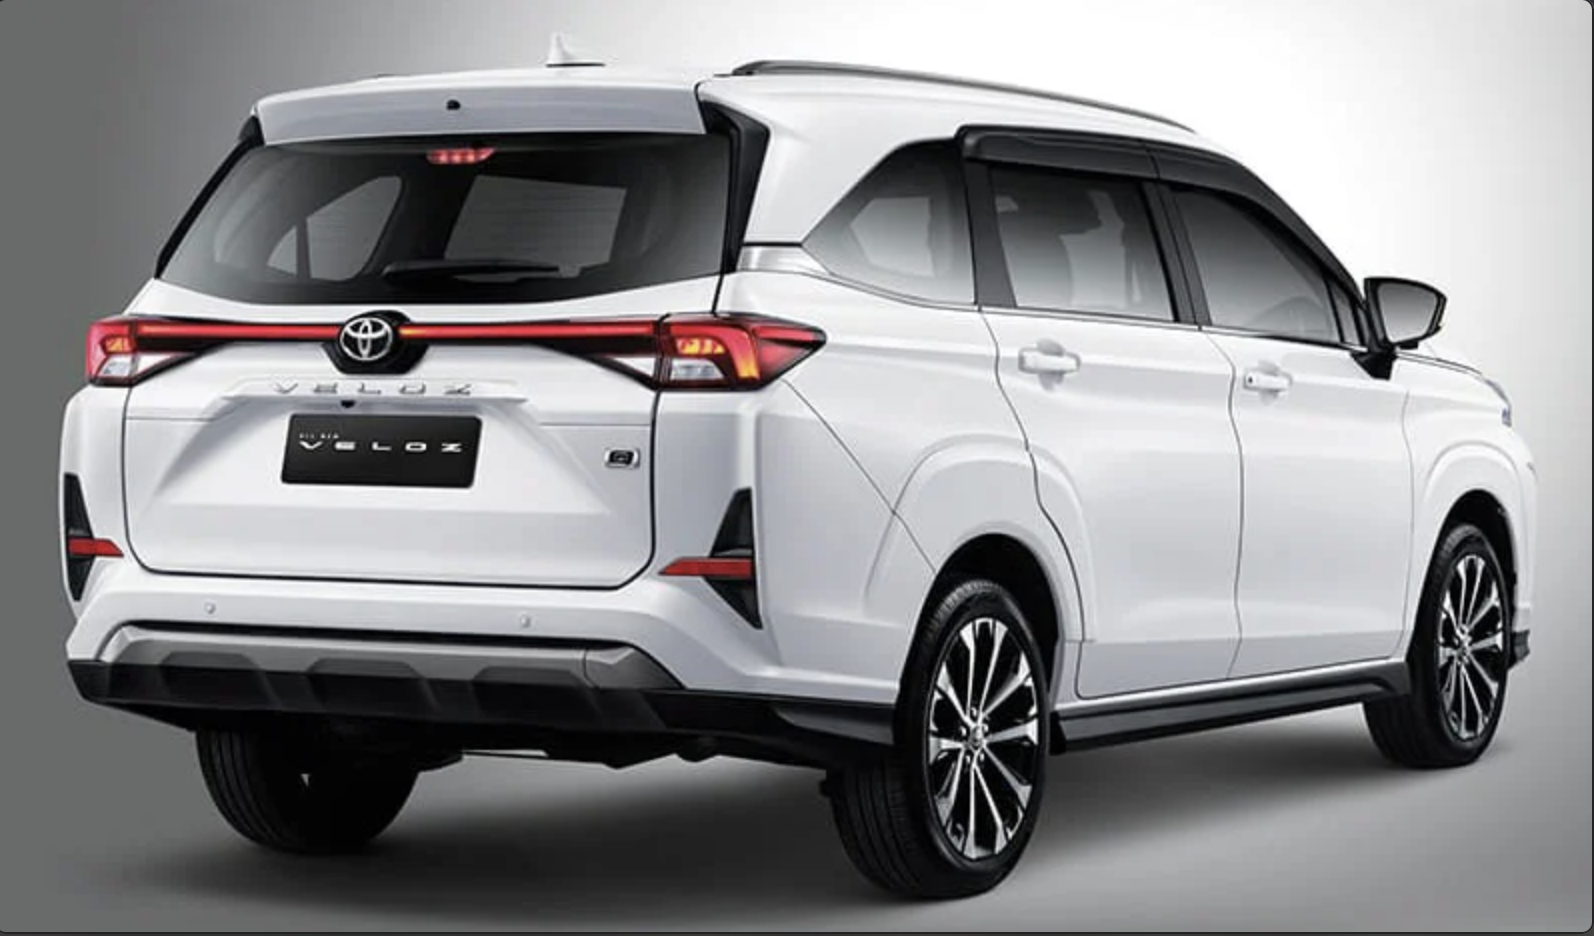 Đại lý nhận đặt cọc Toyota Veloz 2022, dự kiến giao xe tháng 3 Toyota Avanza 2022 chính thức ra mắt, giá từ 14.450 USD screen-shot-2021-11-11-at-003445.png